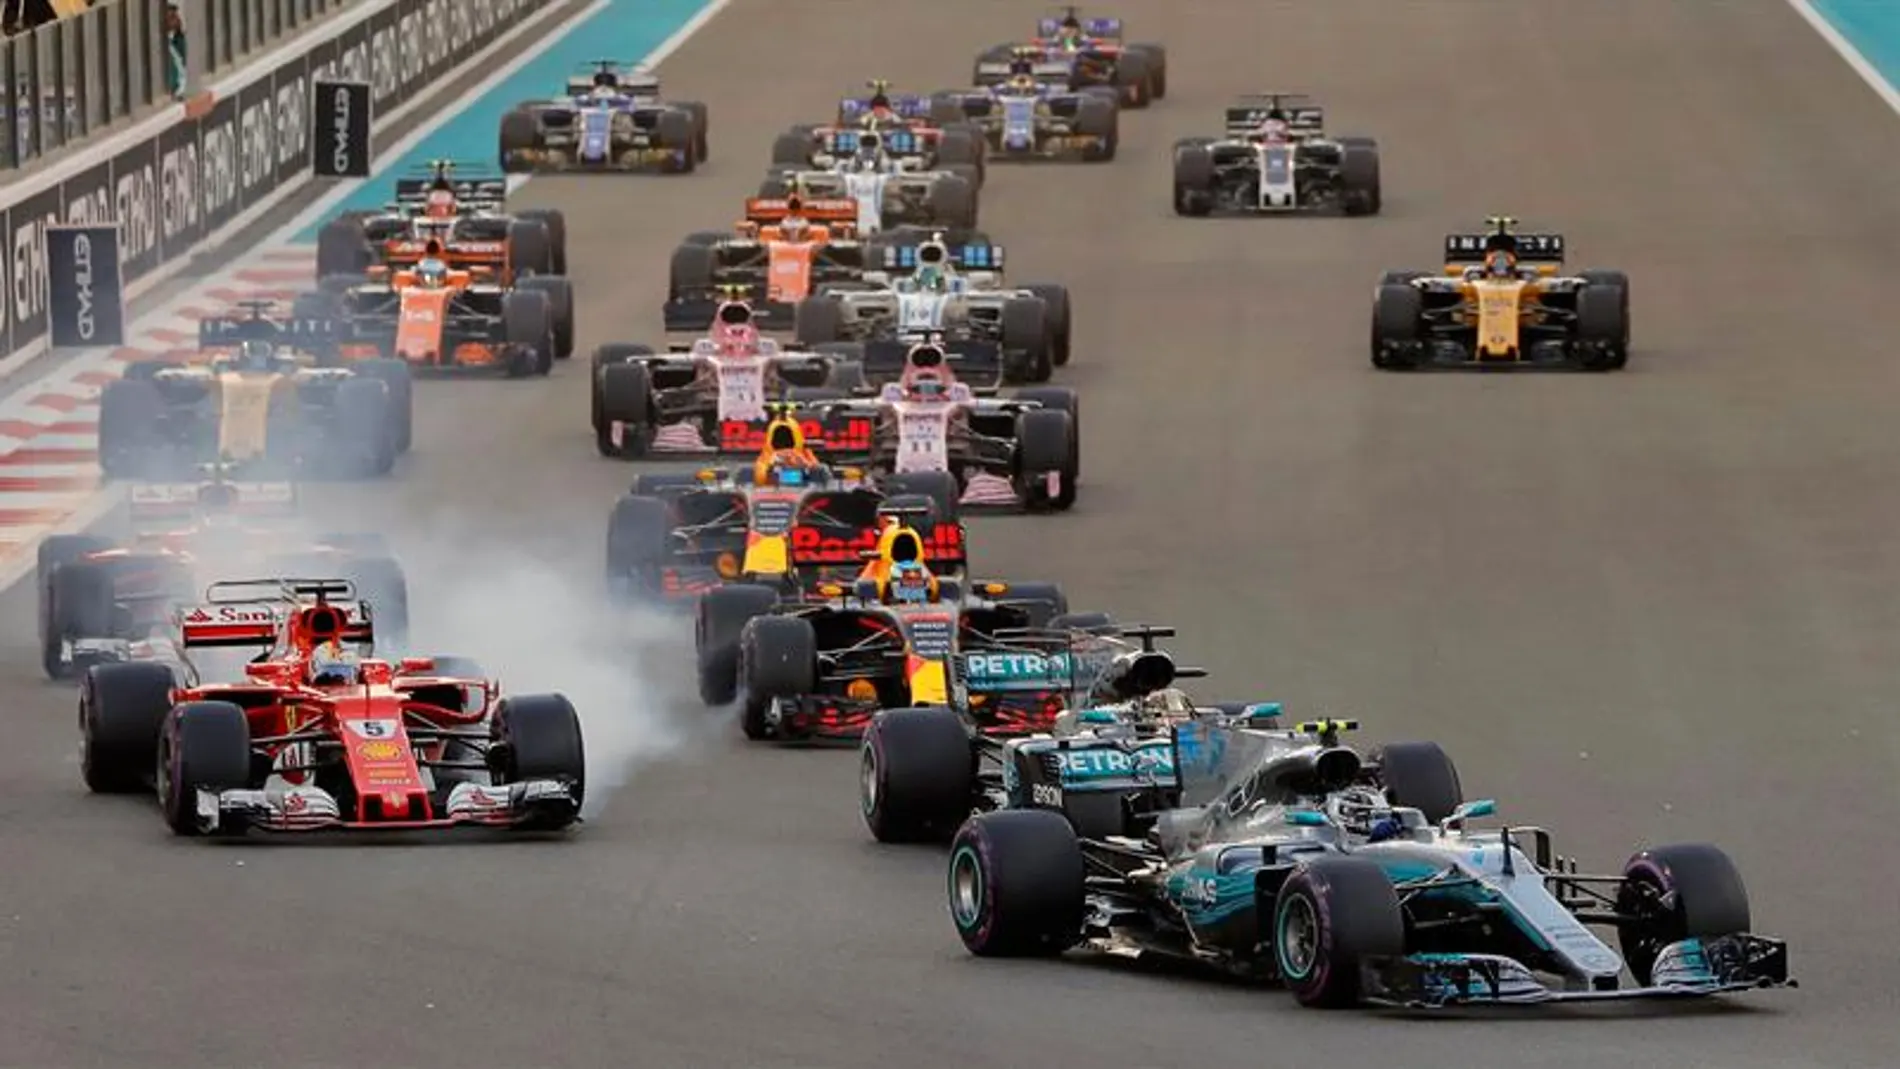 Los pilotos de Mercedes dominaron durante todo el fin de semana